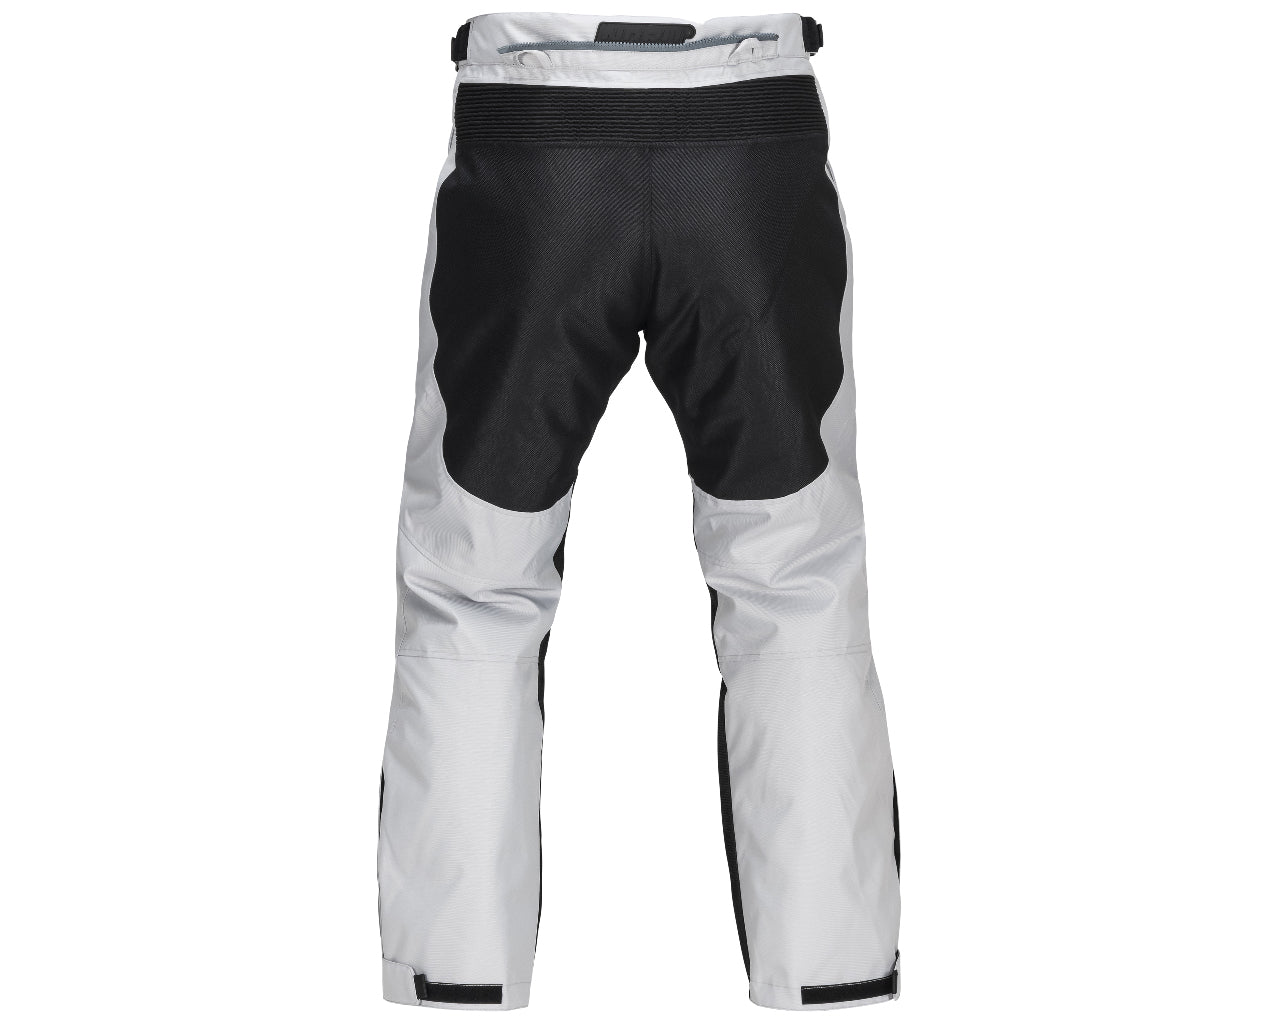 Noru Boken Adventure Waterproof Pant Black/Grey